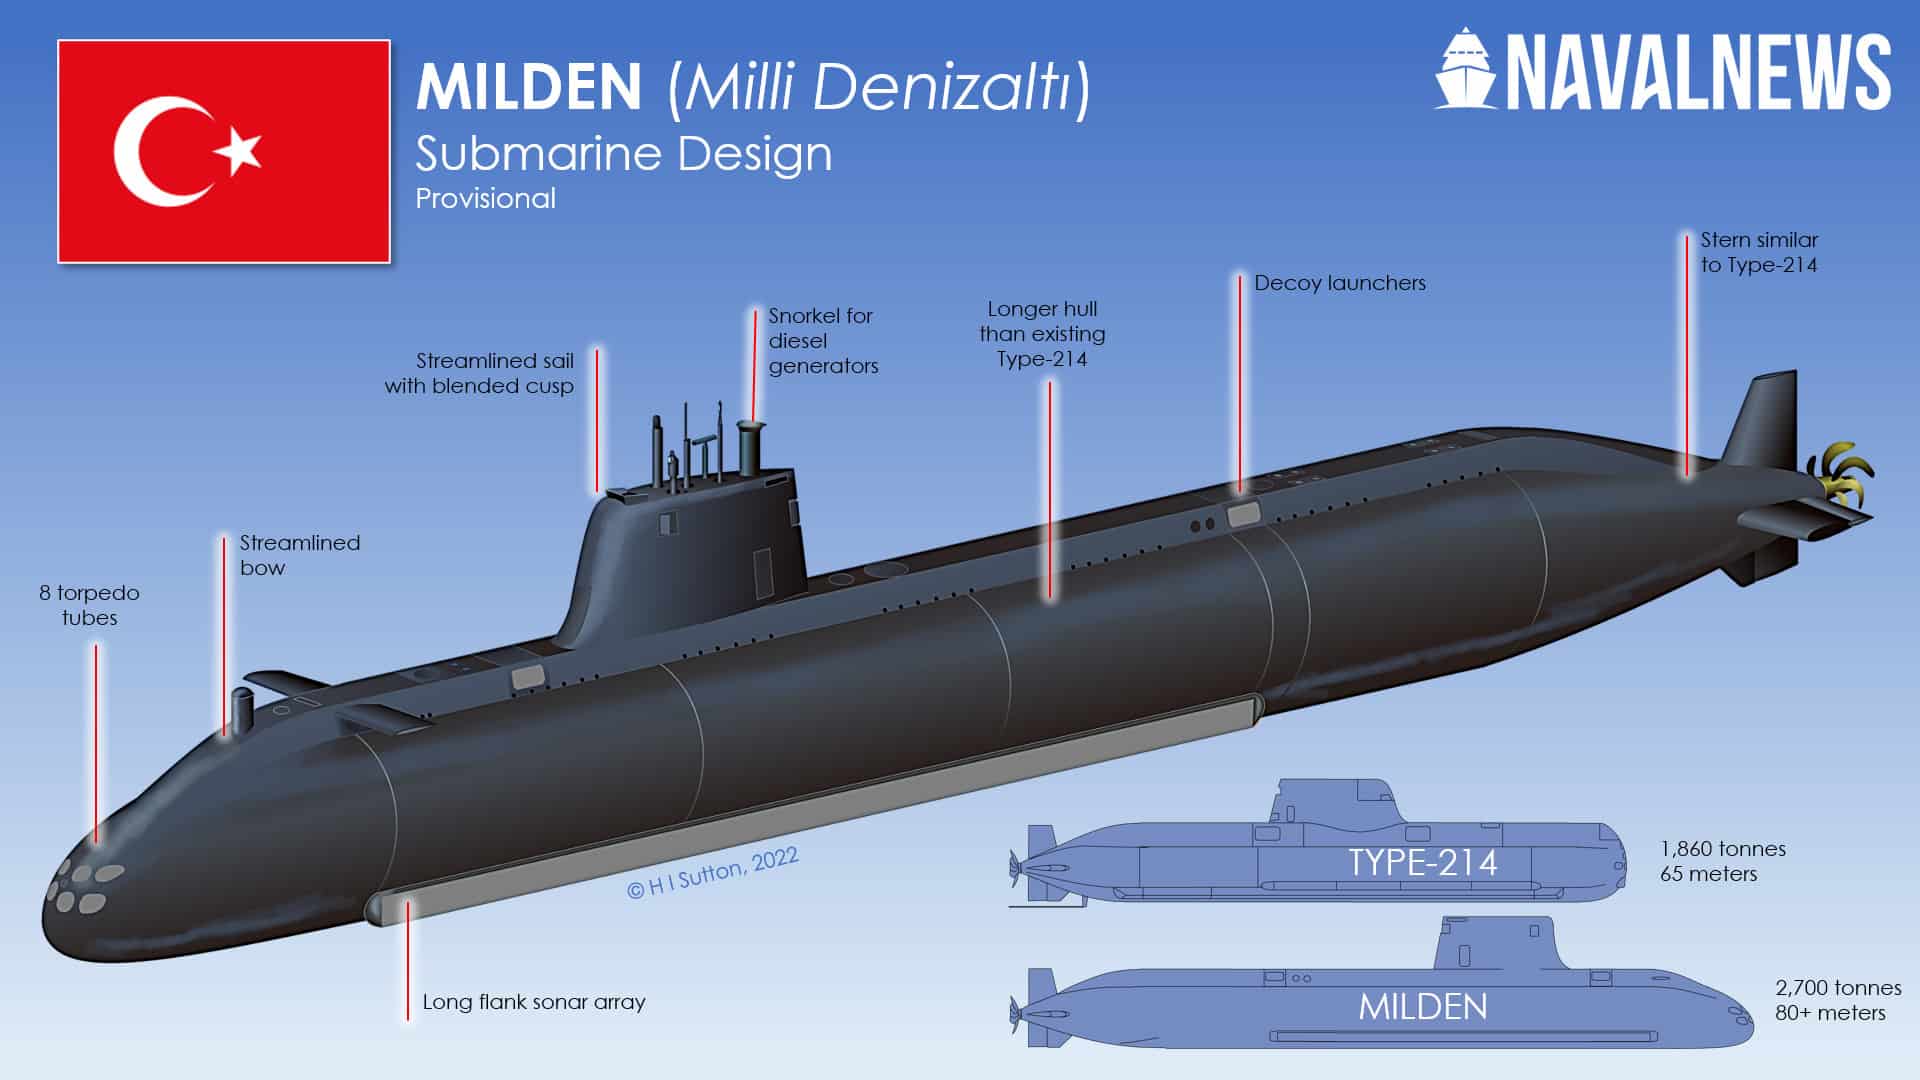 Svelato il sottomarino turco MILDEN con siluri AKYA avanzati, missili anti-nave Atmaca e missili strategici Gezgin